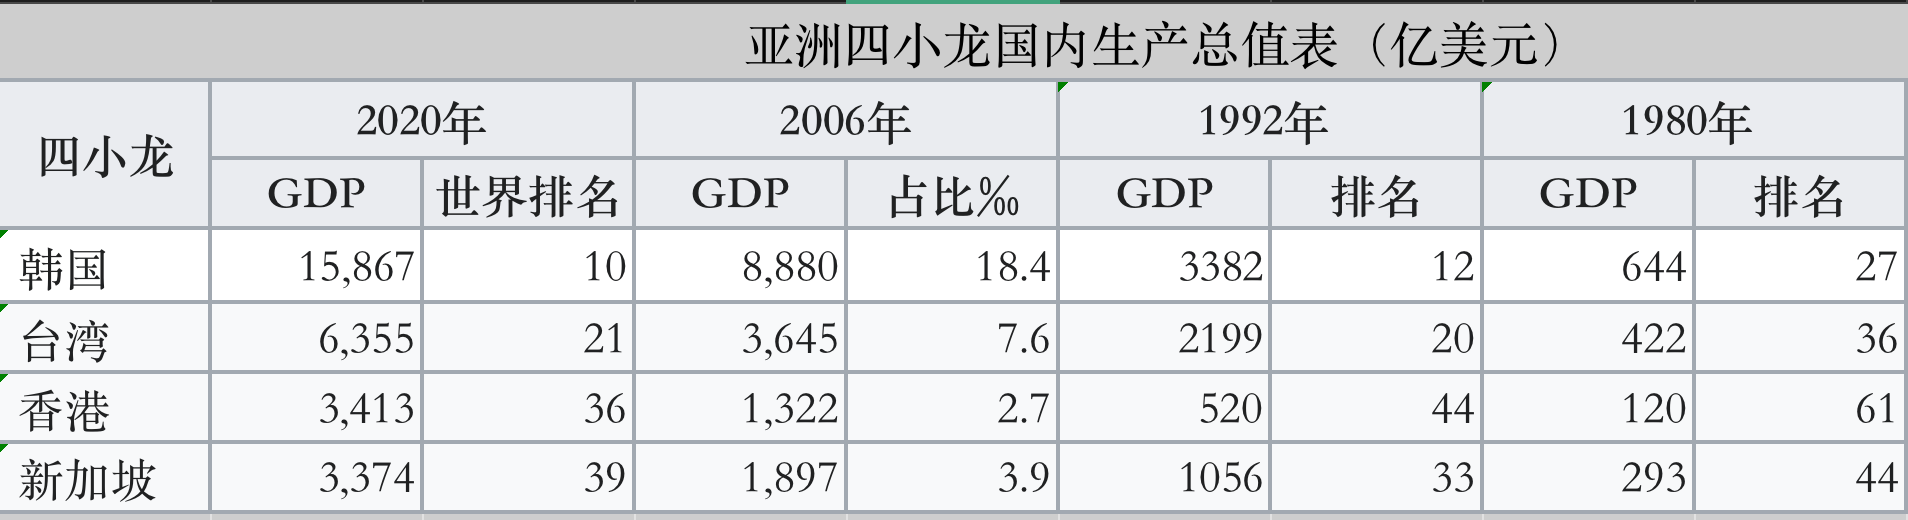 亚洲四小龙2021年人均GDP：新加坡为66,263美元